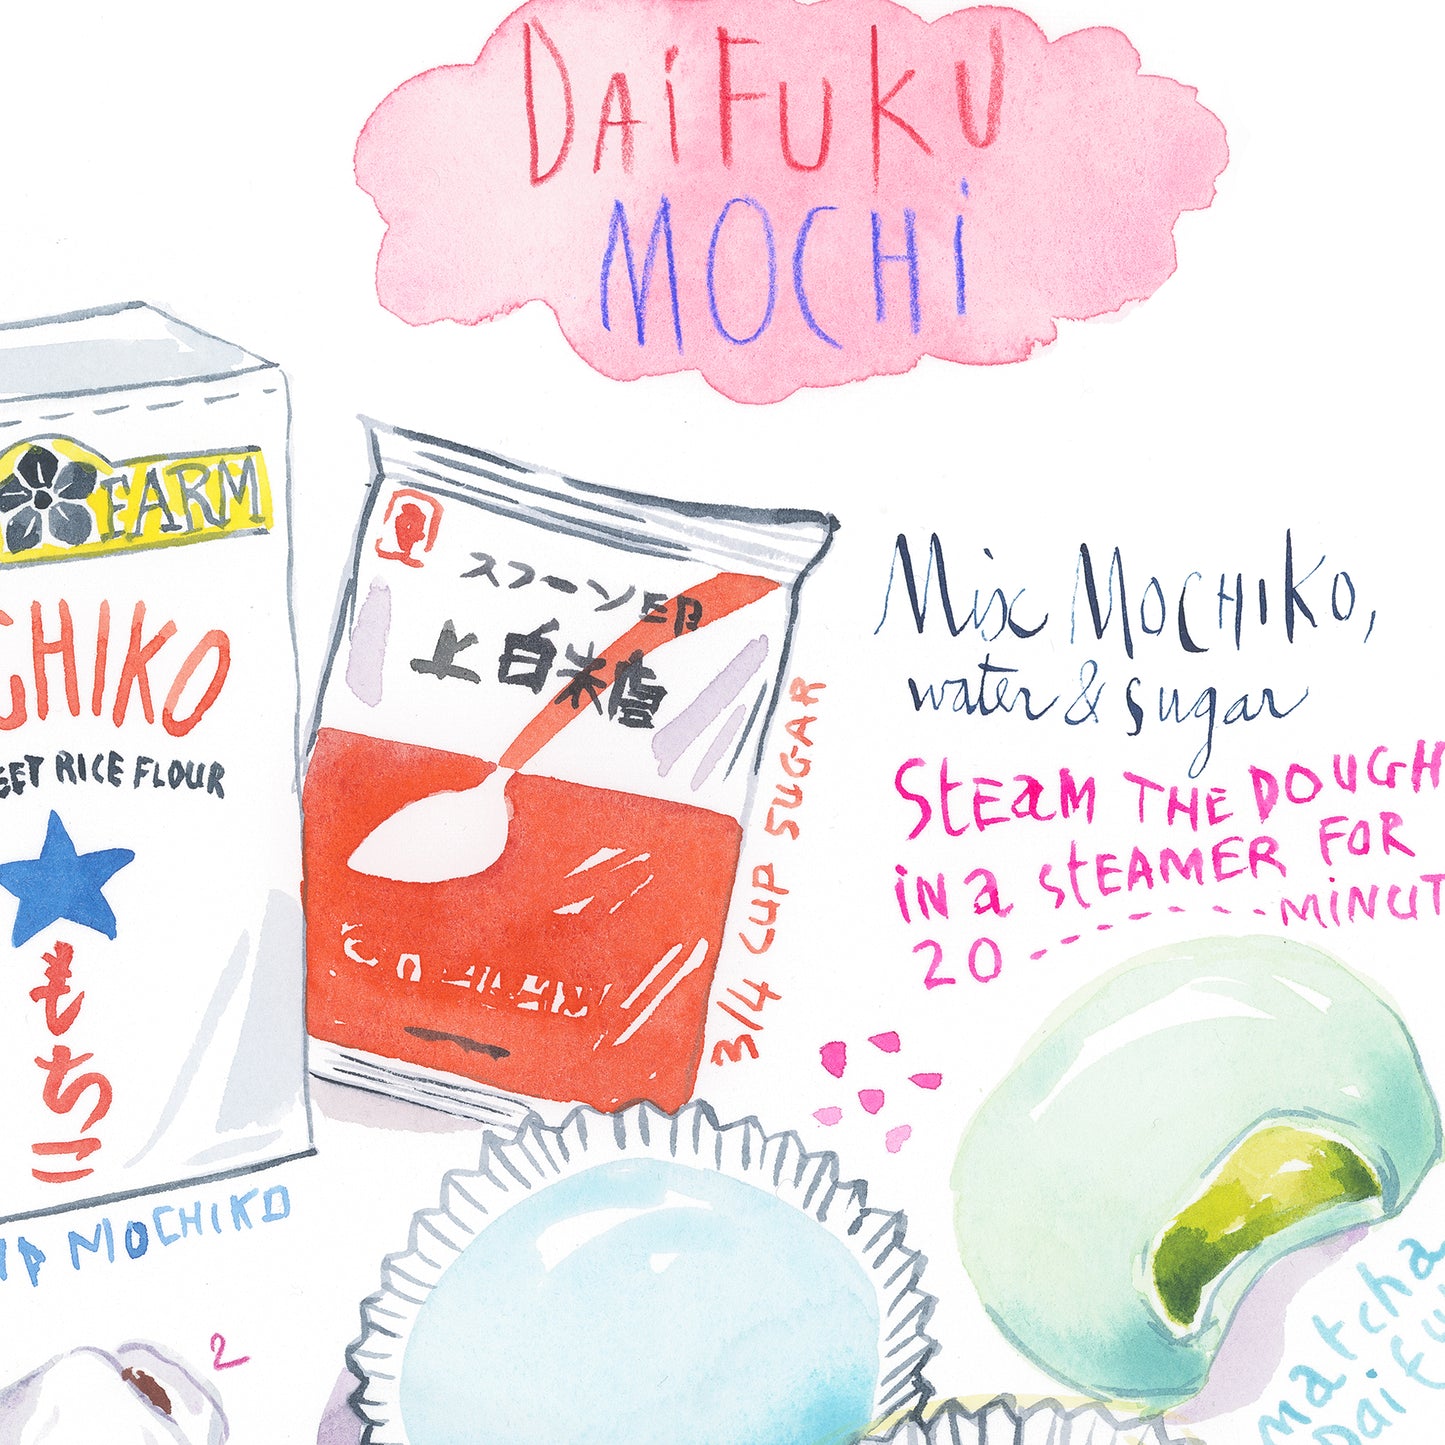 Daifuku Mochi recipe